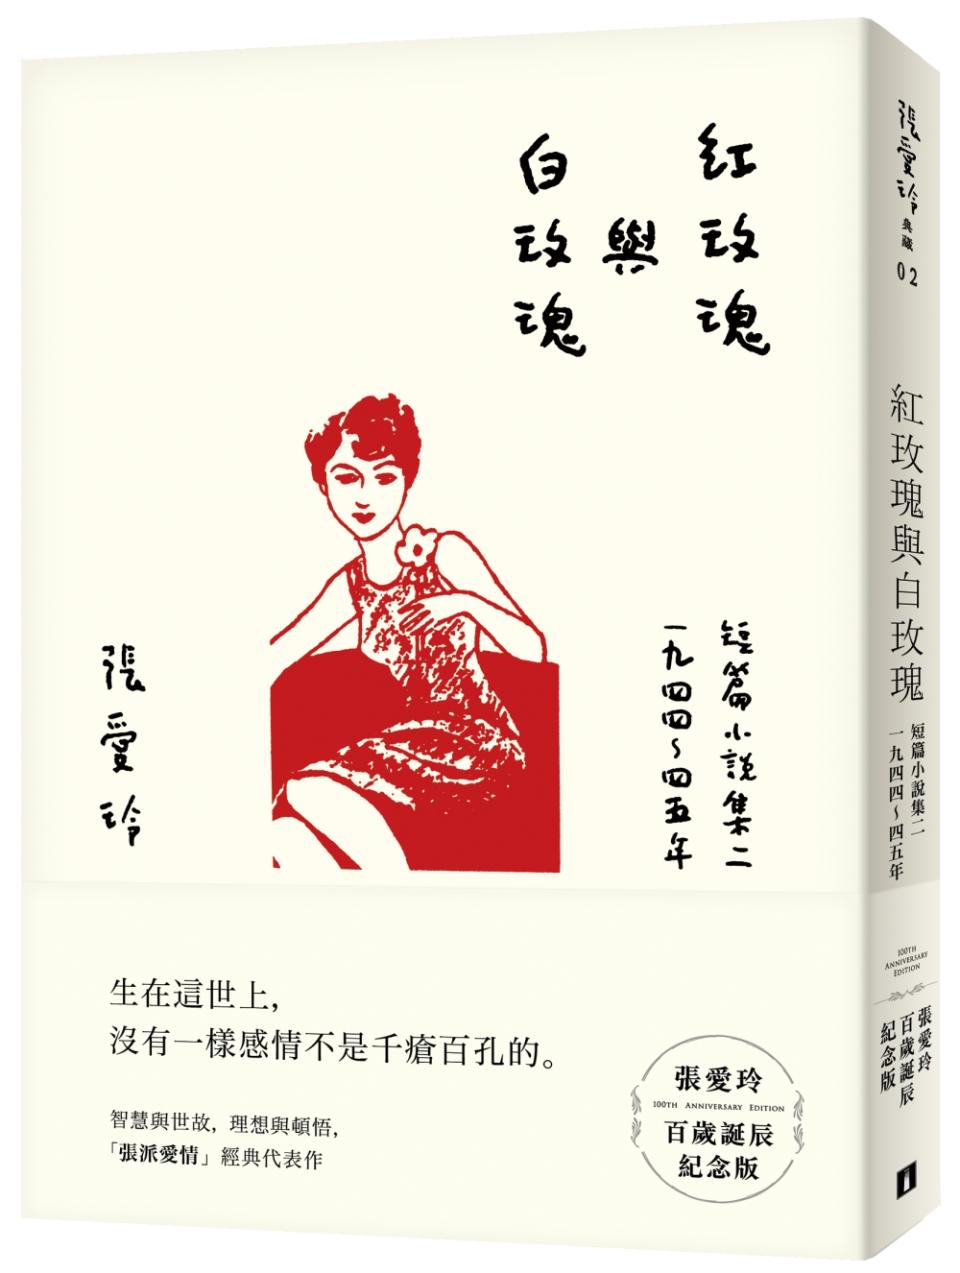 《紅玫瑰與白玫瑰》收錄了張愛玲創作巔峰期的十一篇短篇小說